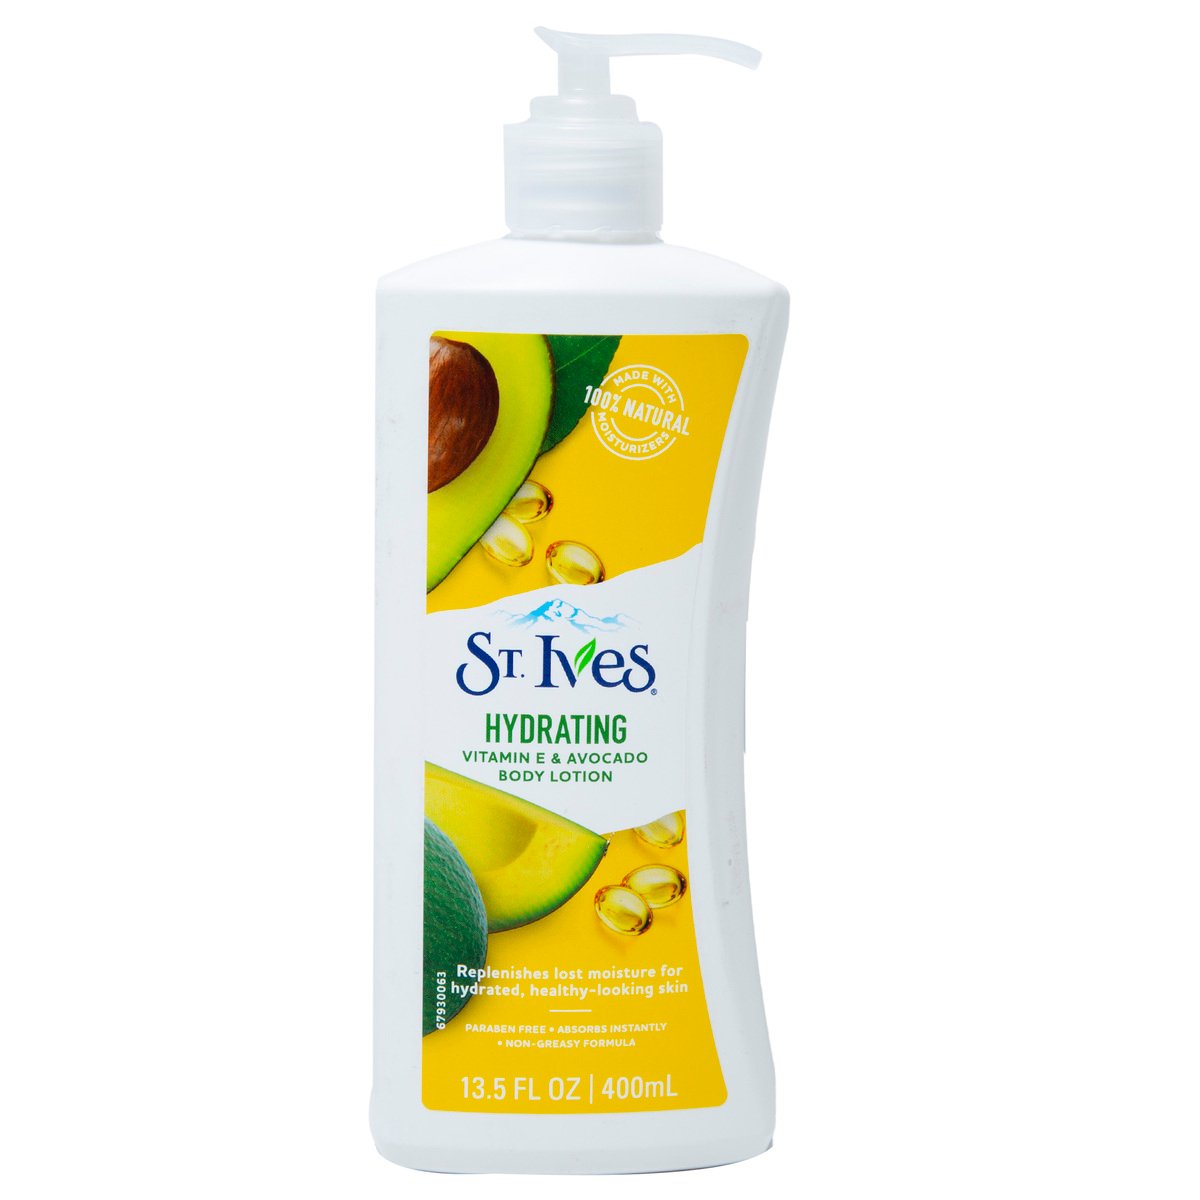 St. Ives Body Lotion Hydrating Vitamin E & Avocado 400 ml